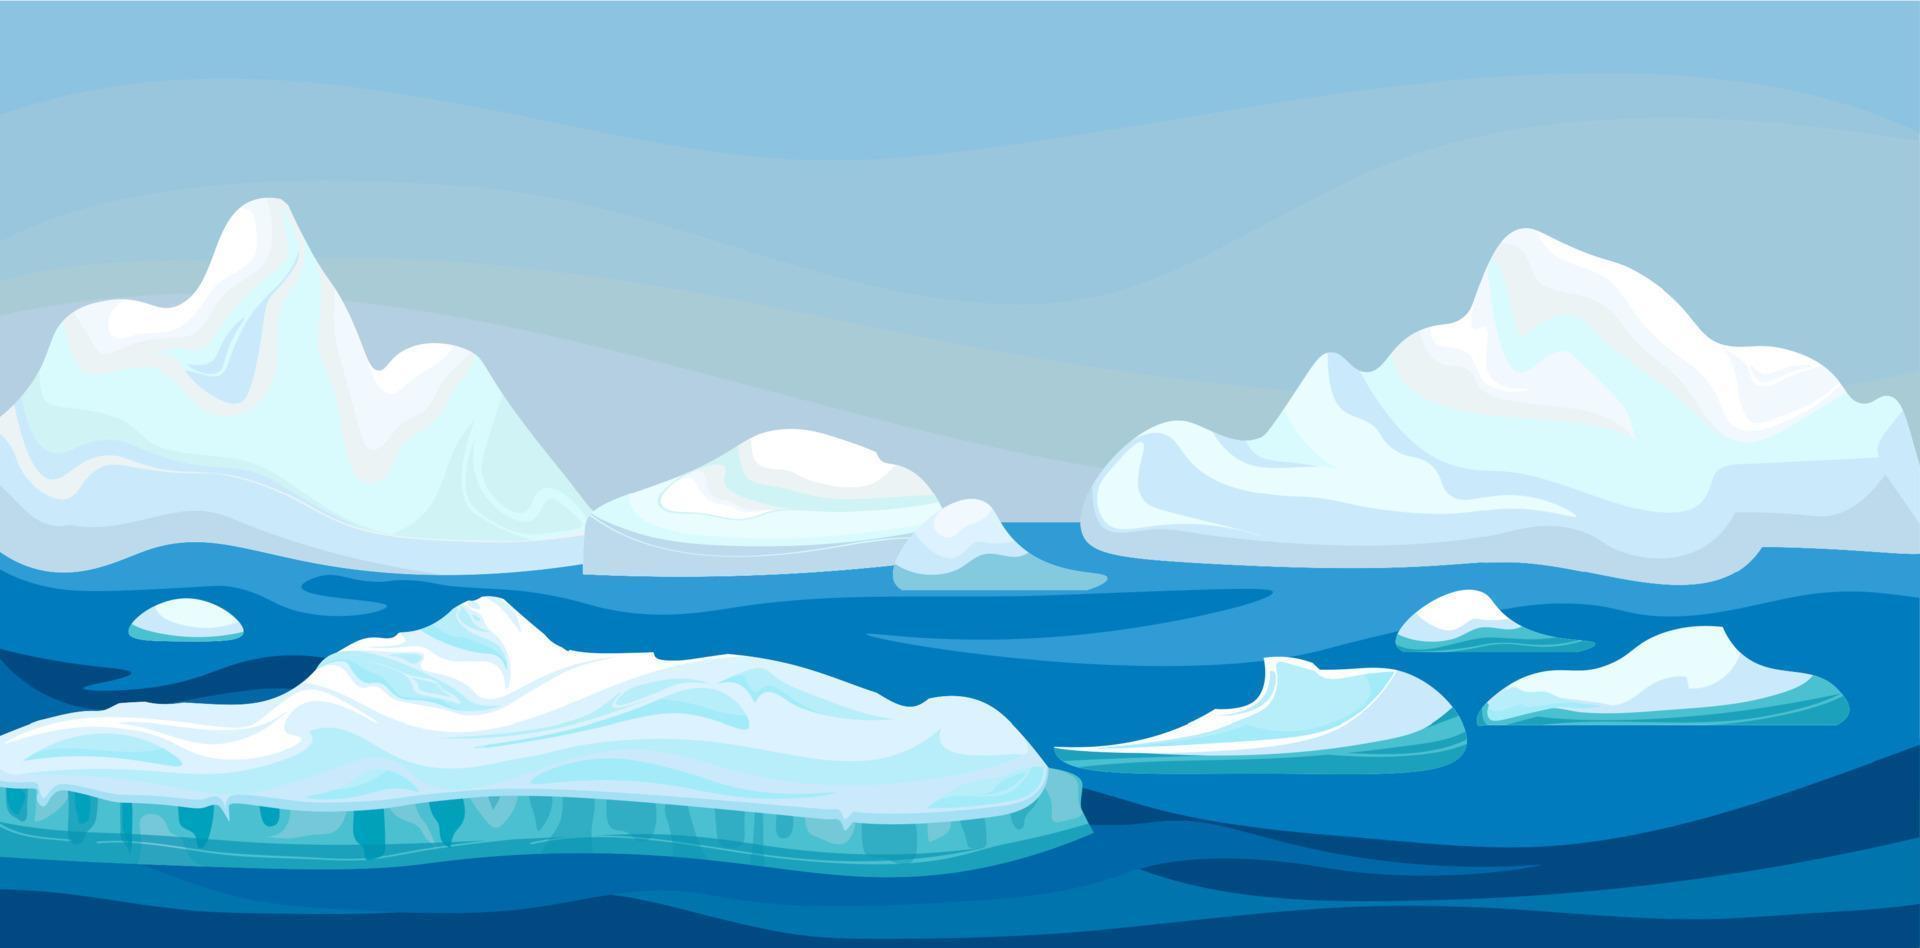 iceberg arctique de dessin animé avec la mer bleue, paysage d'hiver. concept de jeu de scène océan arctique et montagnes enneigées. illustration de fond de nature vectorielle. vecteur